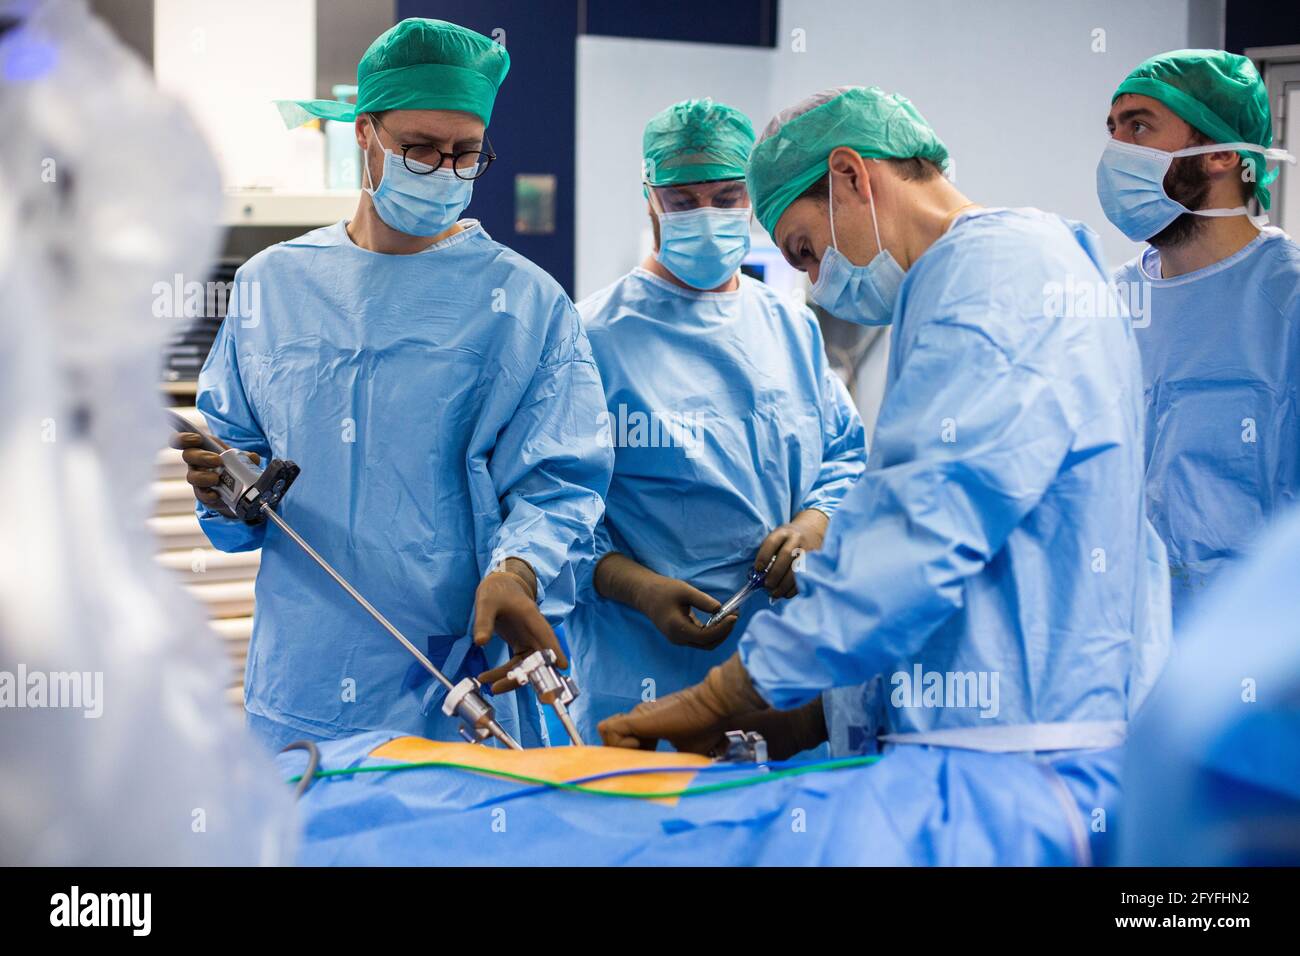 Cirugía renal conservadora robótica guiada por imágenes asistida por el modelado de 3D, este modelado de 3D del riñón con su tumor guía los pasos quirúrgicos en vivo, Foto de stock